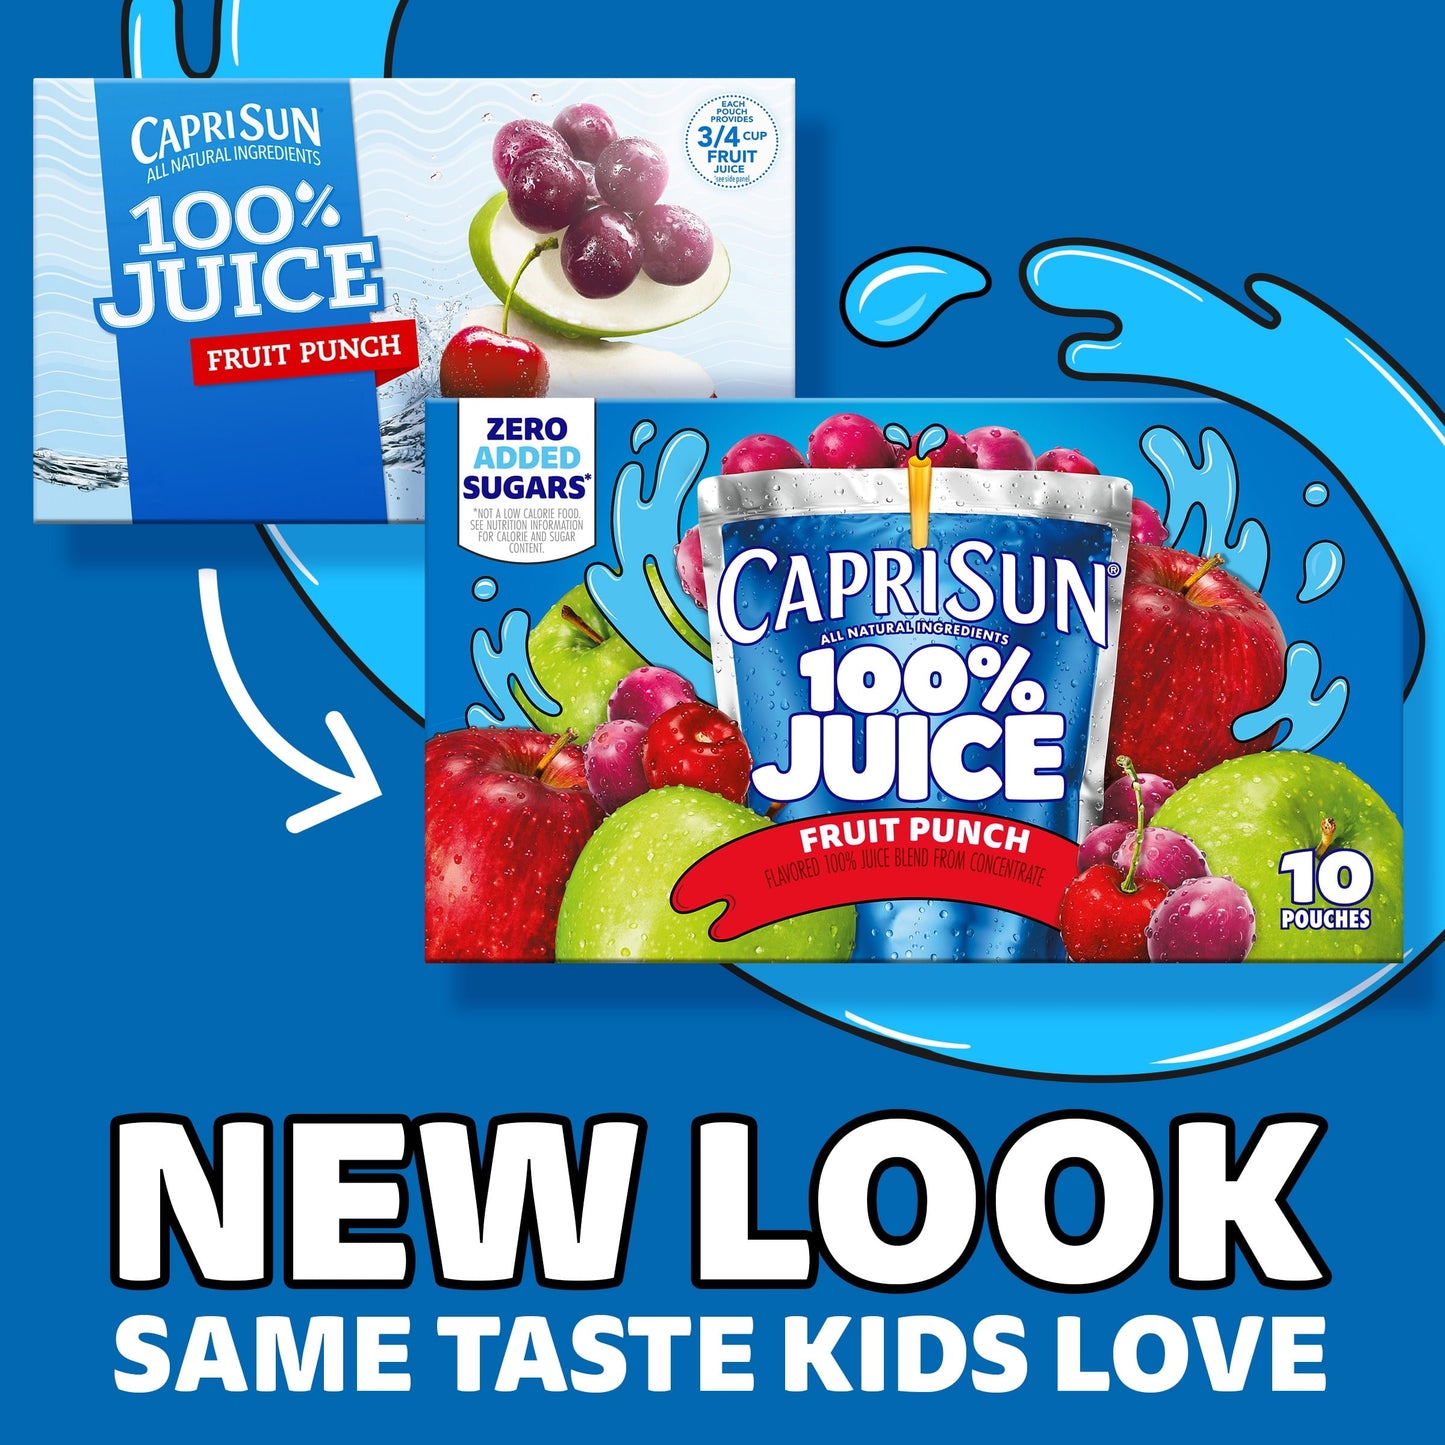 Capri Sun 100% Juice Fruit Punch Juice Box Pouches, 10 ct Box, 6 fl oz Pouches